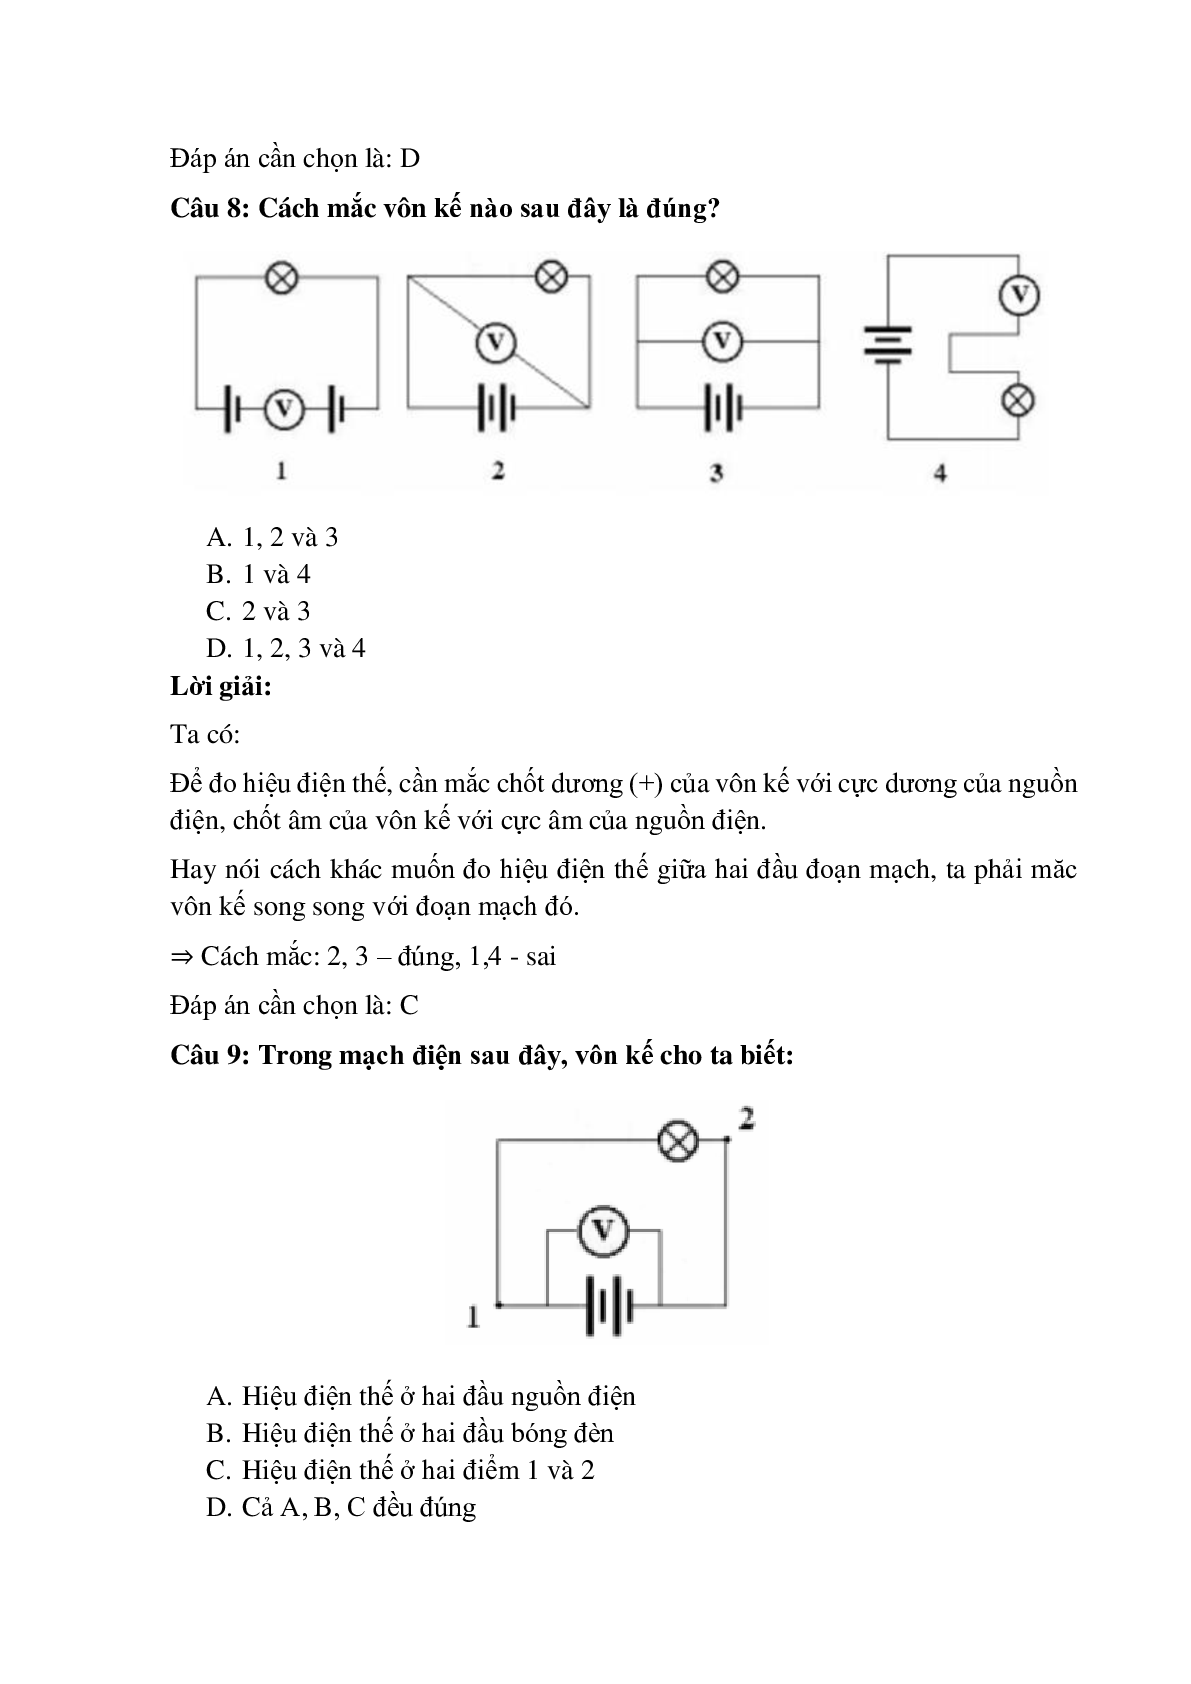 Trắc nghiệm Hiệu điện thế có đáp án – Vật lí lớp 7 (trang 4)